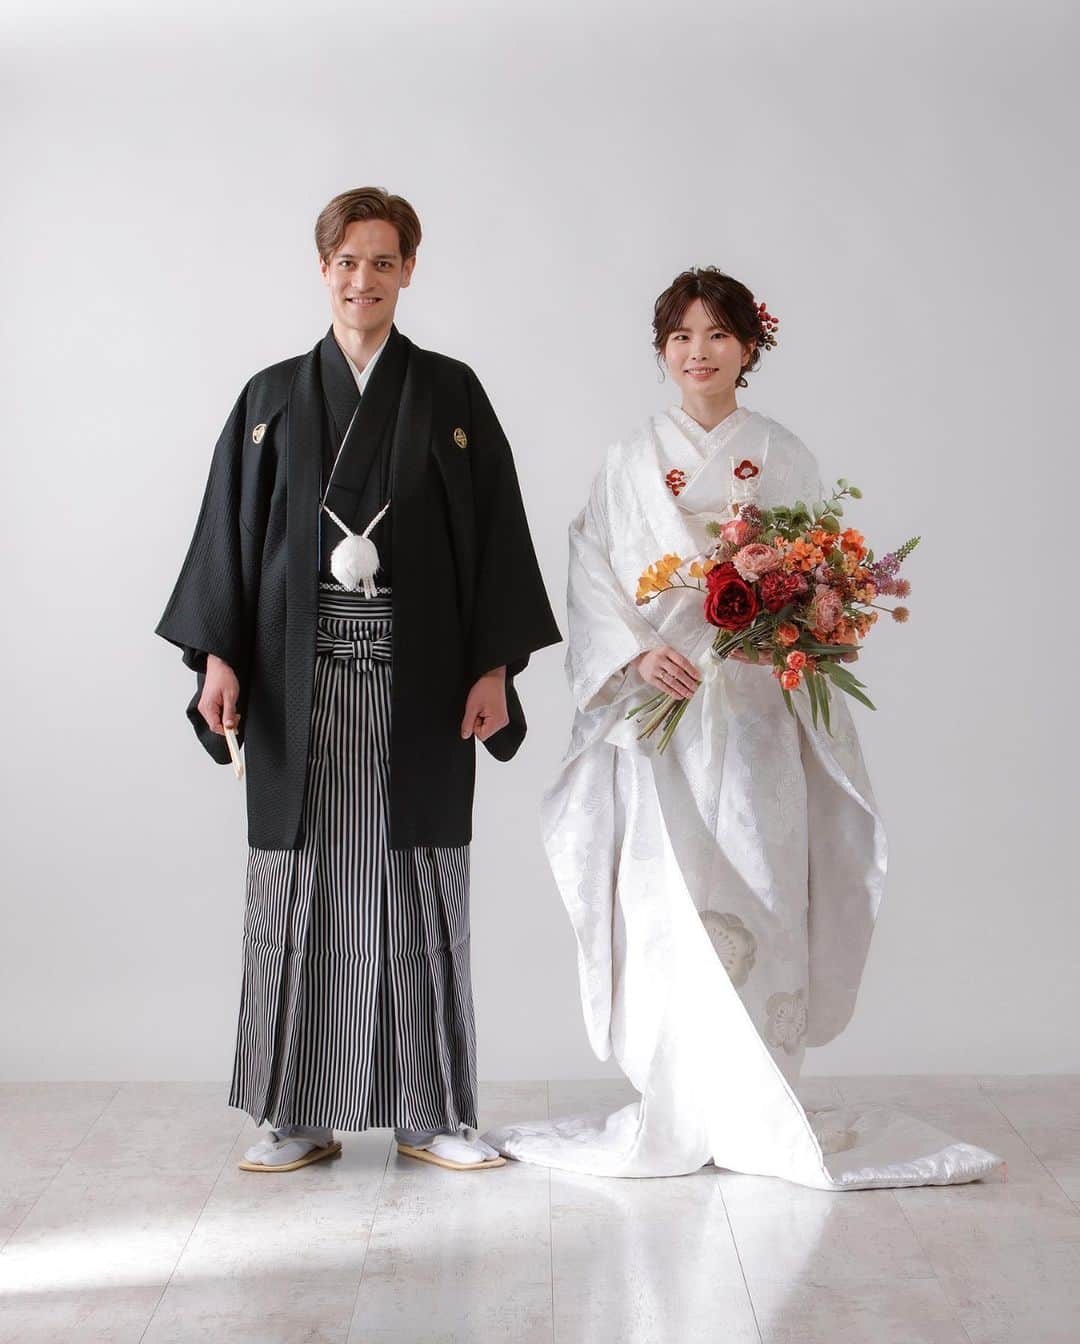 Tomoya Tamadaのインスタグラム：「和装前撮り撮影🤍🥰 【 @kimonoito 和装コラボフォトプラン 】  古典的でレトロな王道和装スタイルから、形式に捉われないファッション性の高いモダンなスタイルまで、お二人の個性を活かした特別なお写真をご提案させていただきます。  ●コラボフォトプラン内容  ・スタジオ撮影 or ロケーション撮影 ・新婦様衣裳 1式 (白無垢、色打掛、引き振袖から1点) ・新郎様衣裳 1式 (黒紋服、色紋服から1点) ・ヘアメイク&着付け ・ブーケ/ヘッドドレス ・撮影(100カット以上〜)  ＊白無垢＋色打掛の和装2点のプランもありますのでお気軽にお問い合わせ下さいませ。  こちらのコラボプランでは、 @masashiro_hosaka  @tama_hairmake が担当させて頂きます。  ●お問い合わせ @kimonoitoのハイライトにあります、 ラインアカウントQRコードを読み込んで頂き、 ご連絡お待ちしております。  上記以外のお問い合わせ先は  ・kimono絲HP ・TEL:0368211710  こちらまで、宜しくお願い致します。  ご質問・ご相談は【お問い合わせ】フォームまで お気軽にご連絡くださいませ。  ＿＿＿＿＿＿＿＿＿＿＿＿＿＿＿＿＿＿＿＿＿＿＿＿＿＿  【 現在、募集中のセミナー 】  ●8月7日(月曜日)  鹿児島  ●8月15日(火曜日)  東京  ●8月21日(月曜日)  大阪   ●8月22日(火曜日)  大阪  ●8月28日(月曜日)  静岡  ●8月29日(火曜日)  静岡  ●9月5日(火曜日)  東京  当日の詳細、ご応募に関しましてはホームページの 「セミナー告知」に記載しておりますので ご応募お待ちしております☺︎  ＿＿＿＿＿＿＿＿＿＿＿＿＿＿＿＿＿＿＿＿＿＿＿＿＿＿  開催告知しているセミナー以外でも 個人様、企業様へ向けた臨店講習も行なっております。 臨店講習のお問い合わせは、こちらから宜しくお願い致します。  LINE ID ➡️ @ntb4770x  雑誌、広告、web撮影などのご依頼もお気軽にお問い合わせ下さいませ。 ご依頼に関するお問い合わせは、ホームページの 「お問い合わせ」からご連絡お待ちしております。  #ウェディング#ブライダル#花嫁#結婚式#結婚式準備#前撮り#和装#和装前撮り#weddingphoto#ウェディングフォト#プレ花嫁#プレ花嫁さんと繋がりたい#プレ花嫁準備#2023春婚#2023夏婚#2023秋婚#鹿児島花嫁#東京花嫁#ウェディングヘア#ブライダルヘア#ヘアアレンジ#ヘアメイク#花嫁ヘア#ウェディングドレス#weddinghair#bridalhair#新娘化妝#新娘秘書#新娘髮型#웨딩」